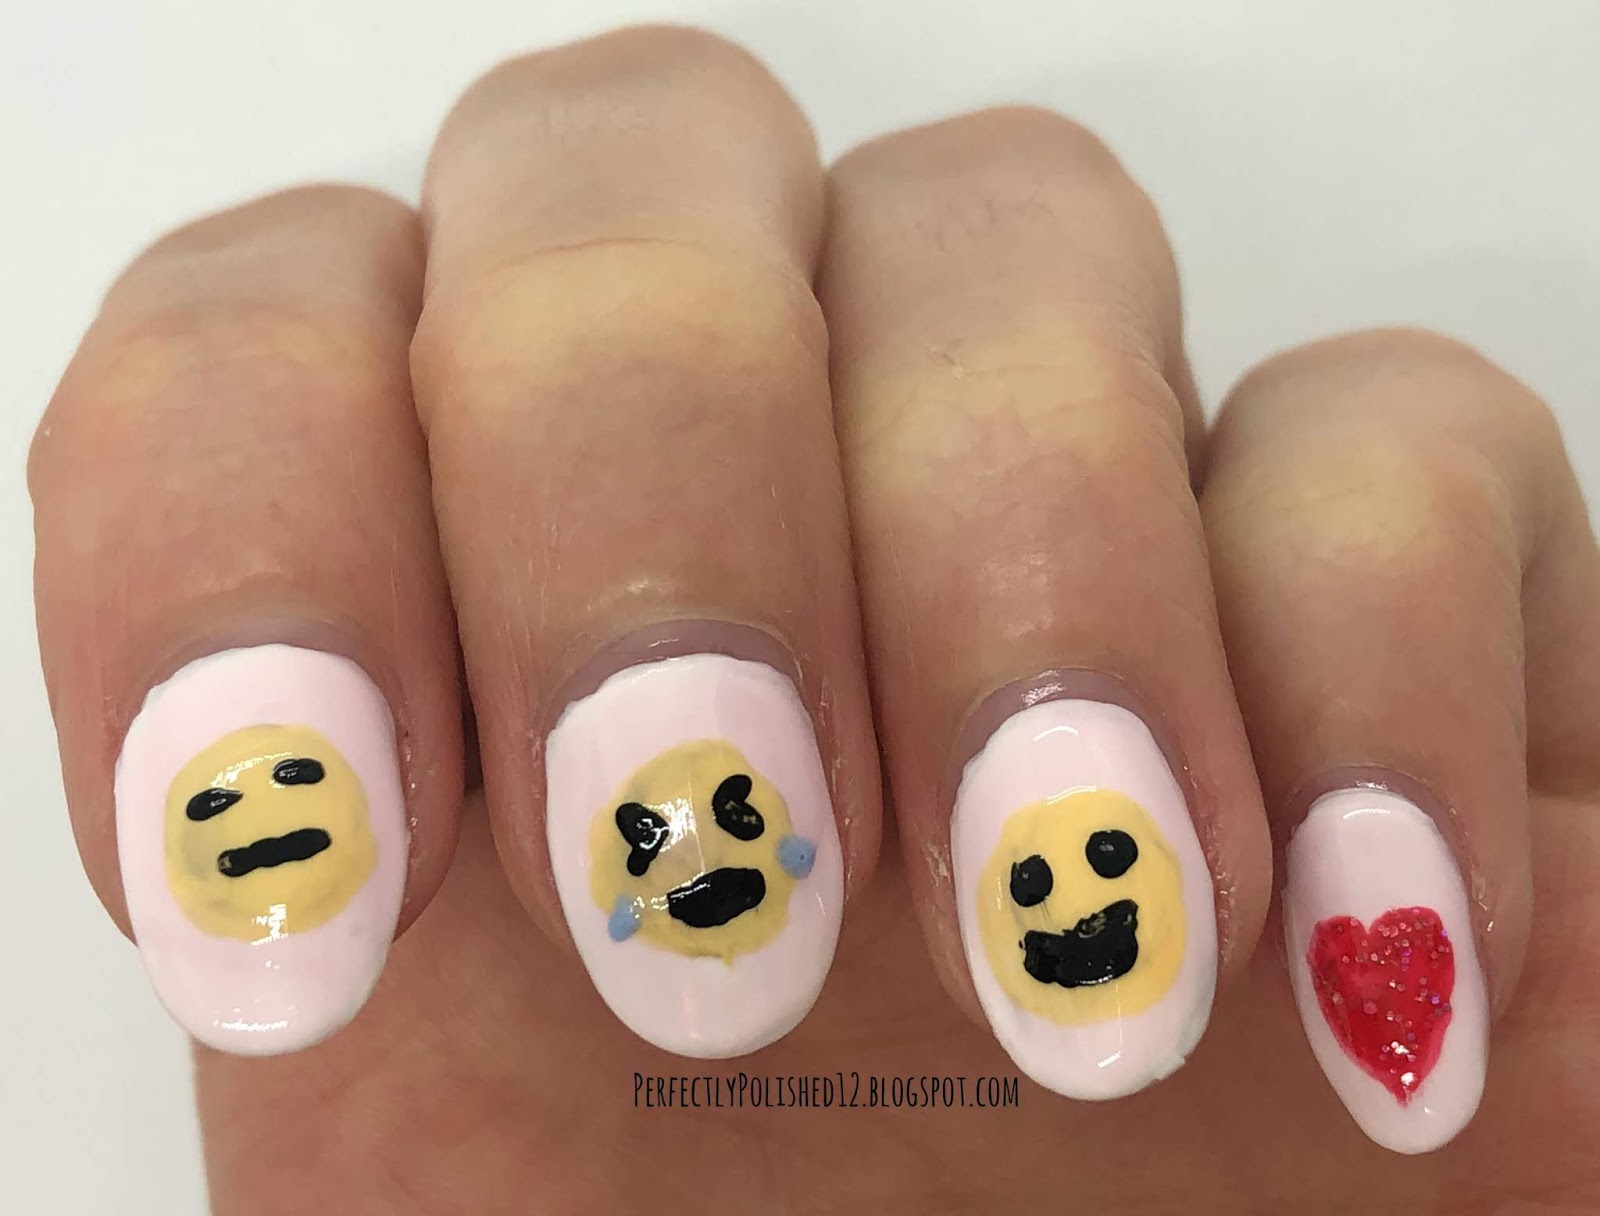 1. "Easy Emoji Nail Art Tutorial" - wide 7